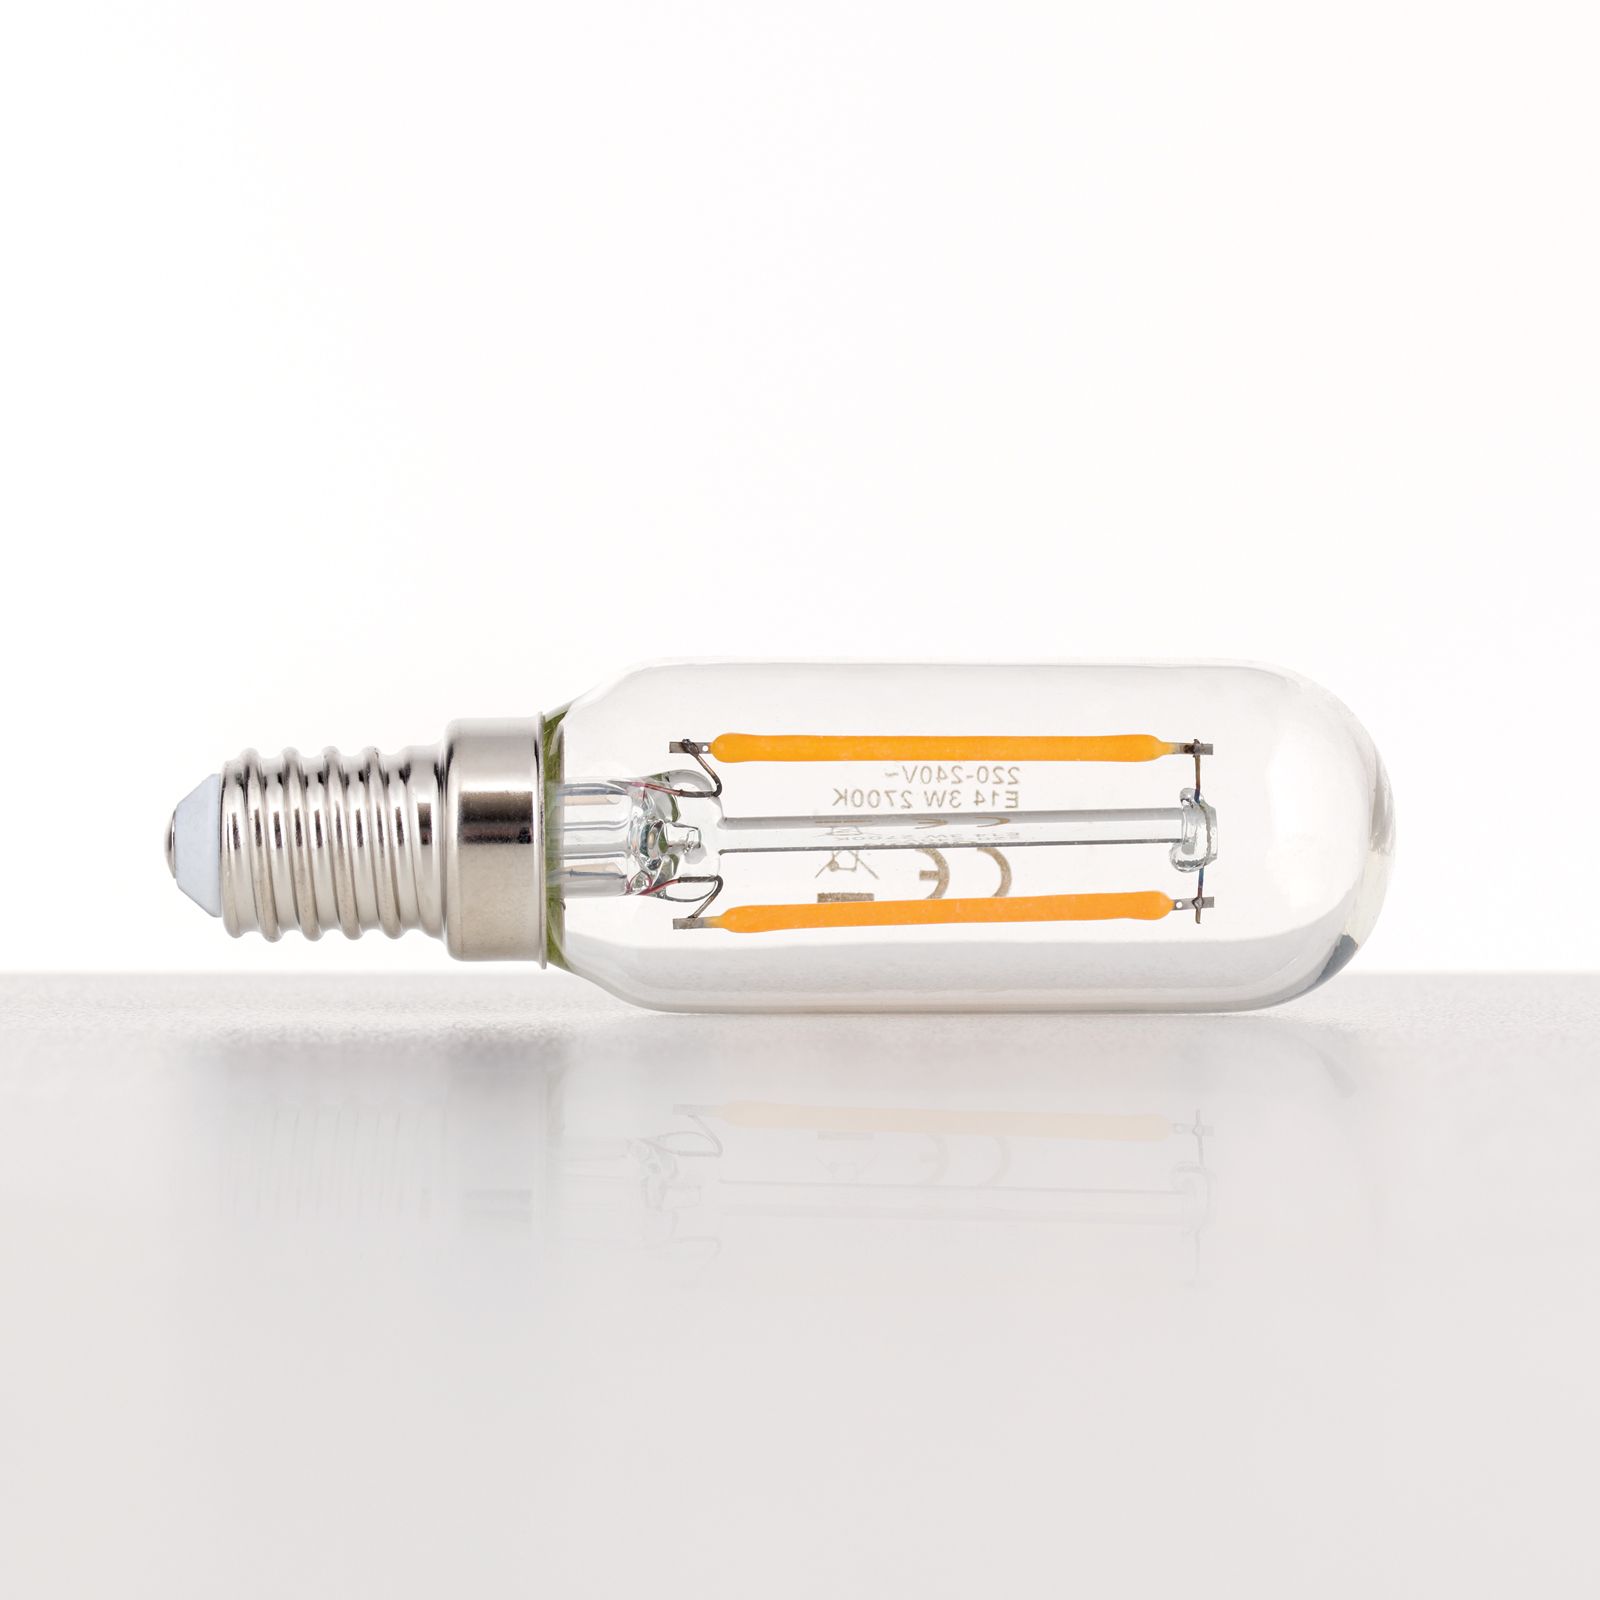 LED lamp, Watt, warm white | 197.E14T2503-01